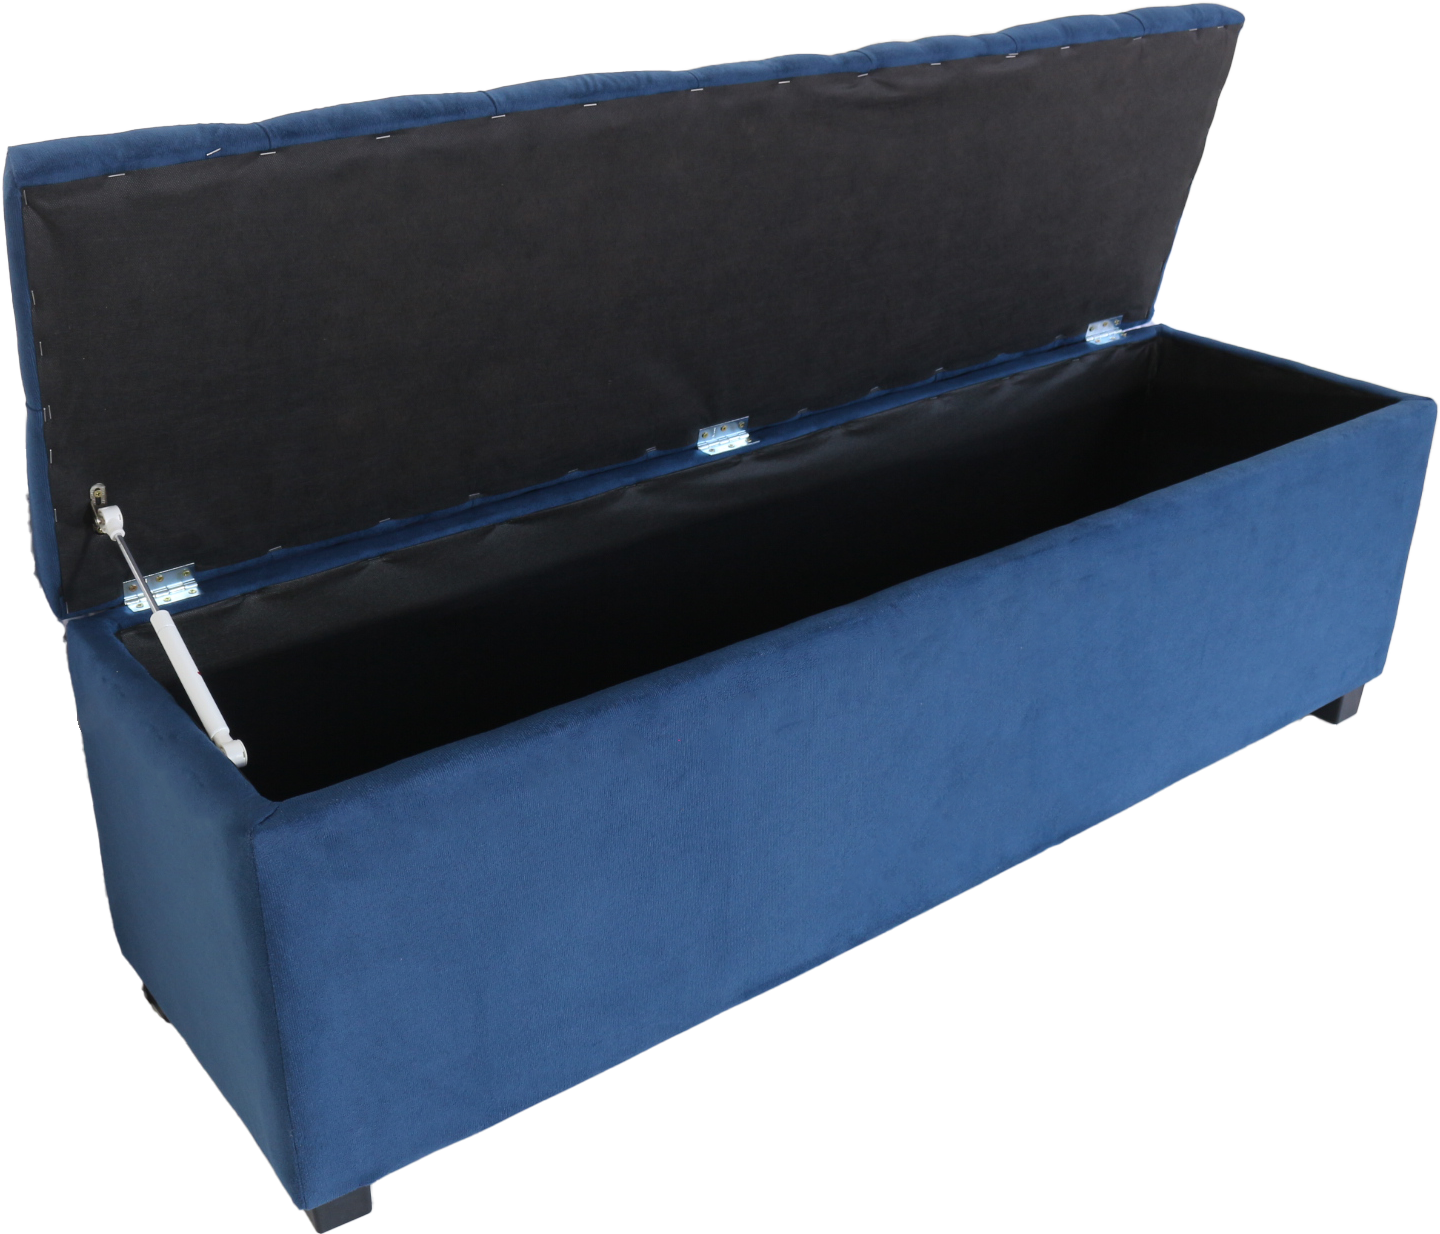 Puf Baú Recamier Estofado Casal Azul Marinho 140x40x45cm Produto Com Alta Qualidade e Conforto